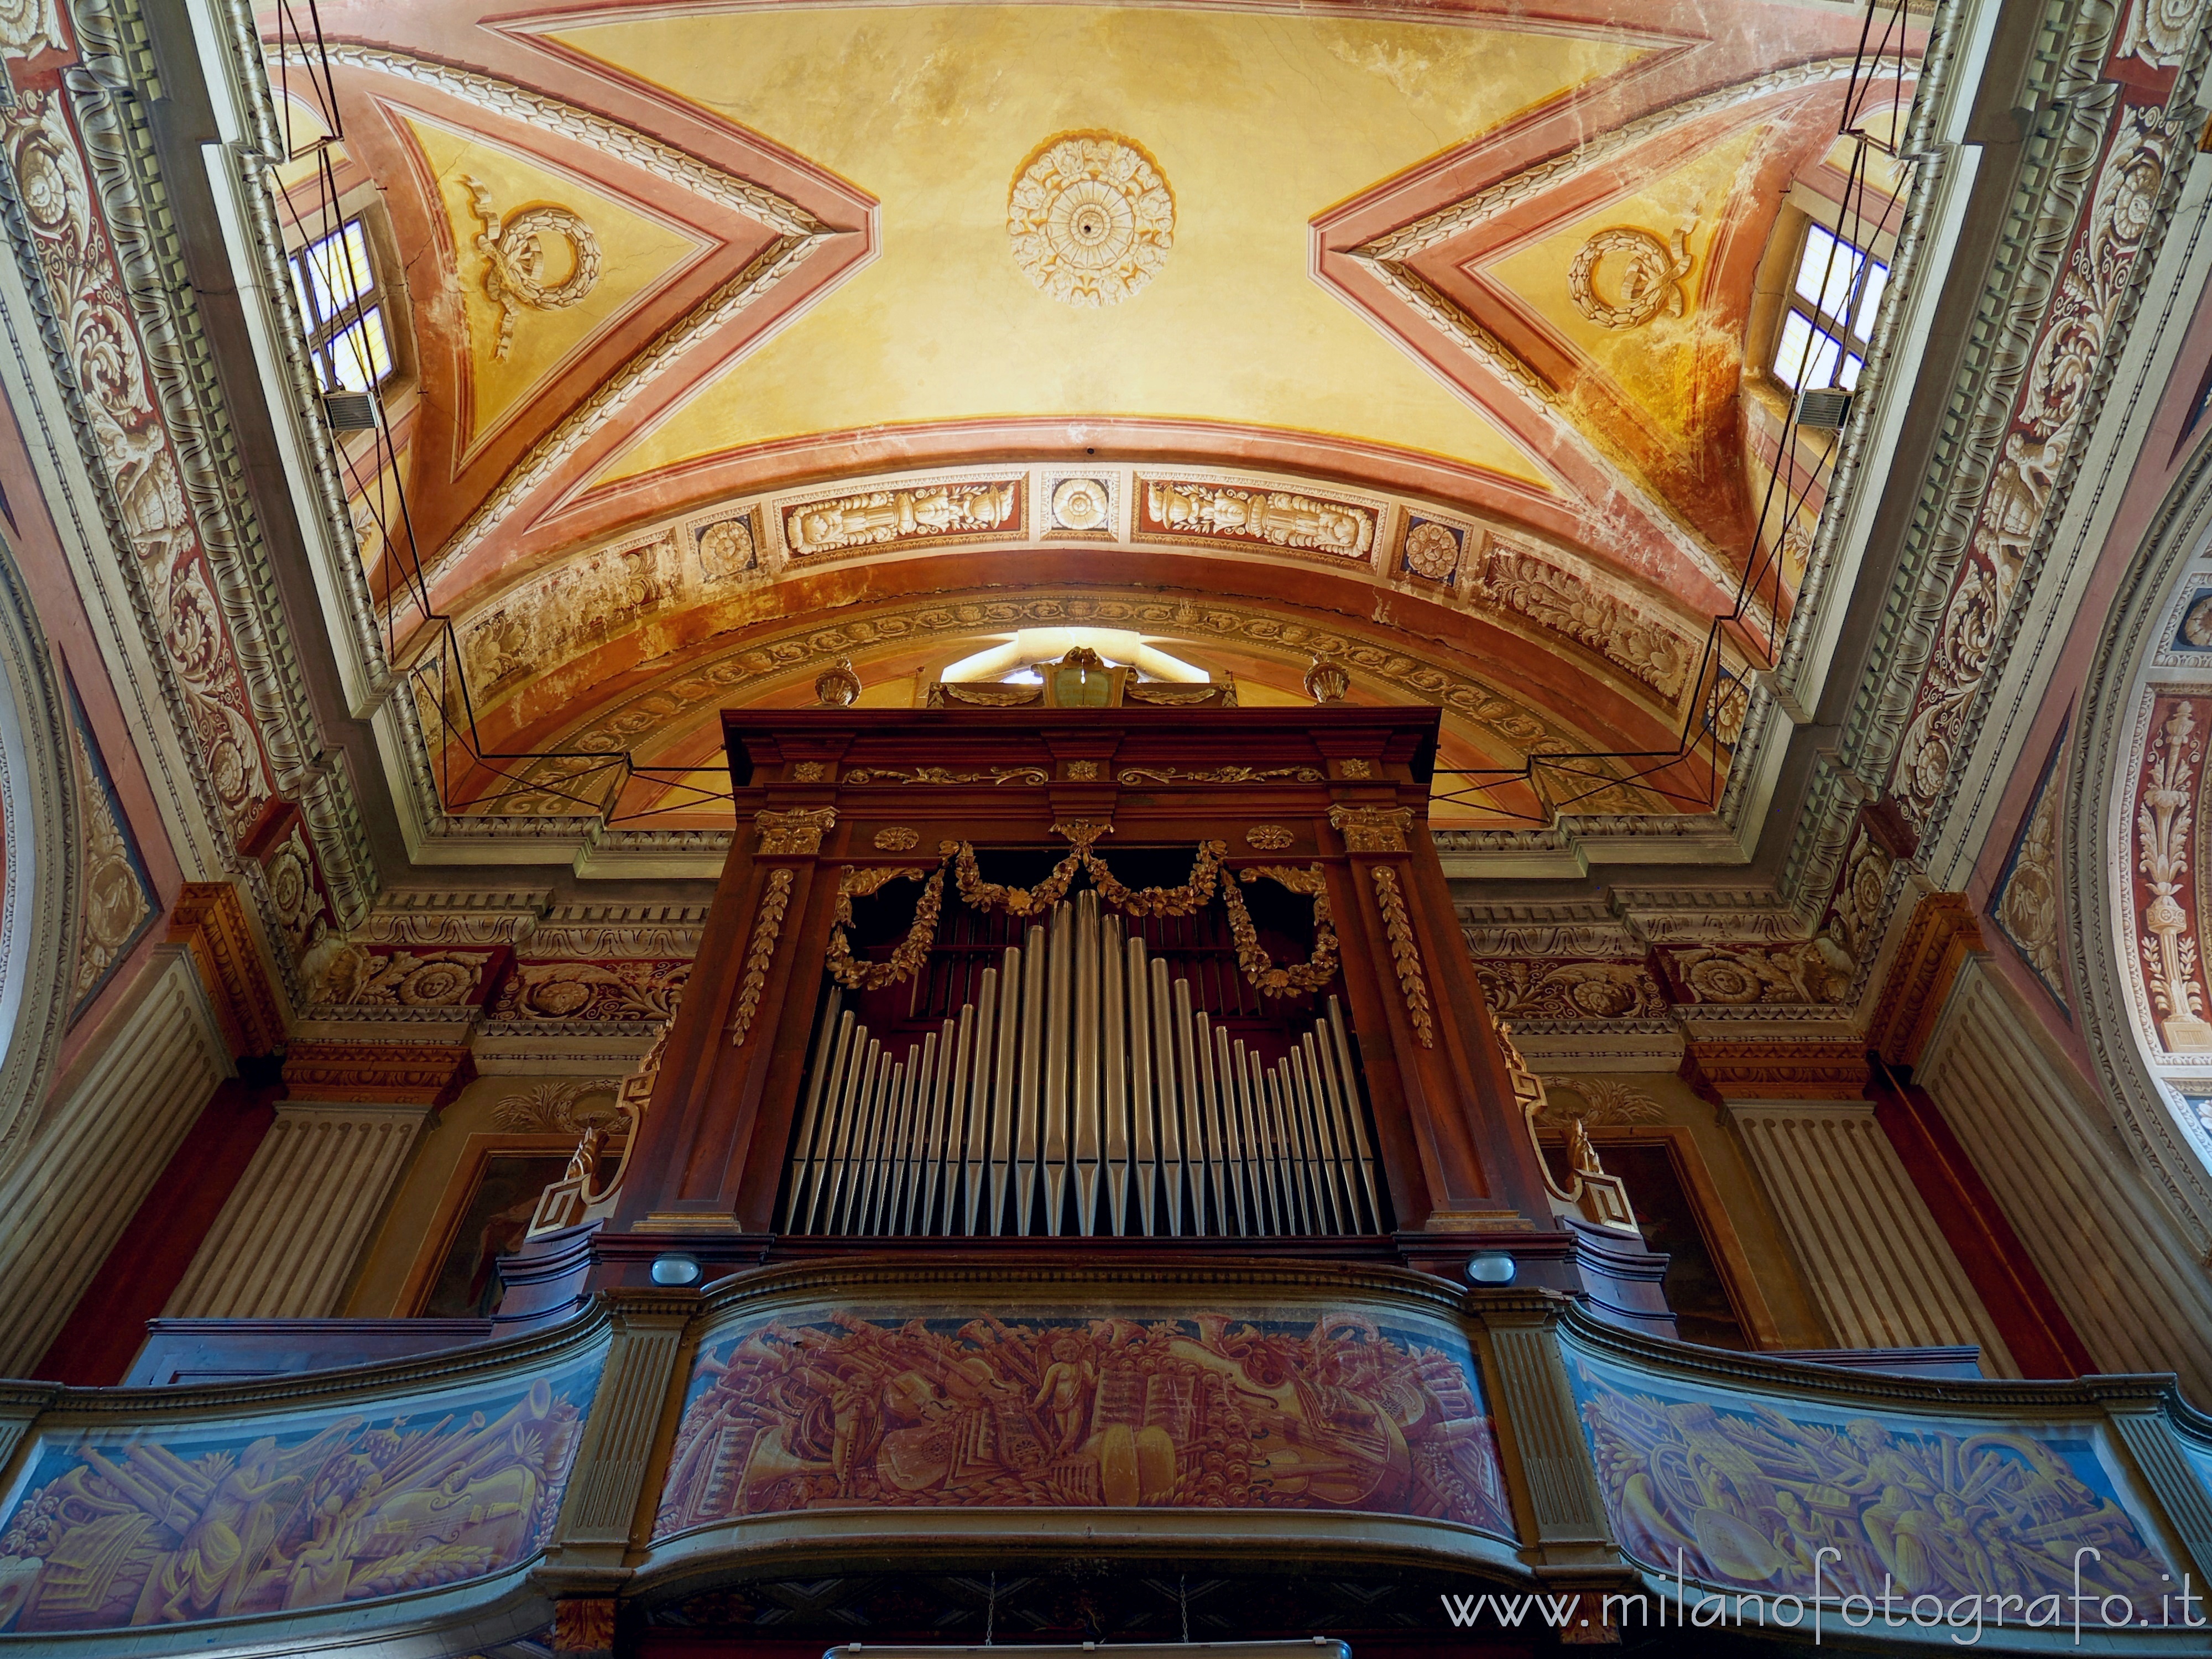 Candelo (Biella, Italy): Cantoria and organ of the Church of San Lorenzo - Candelo (Biella, Italy)